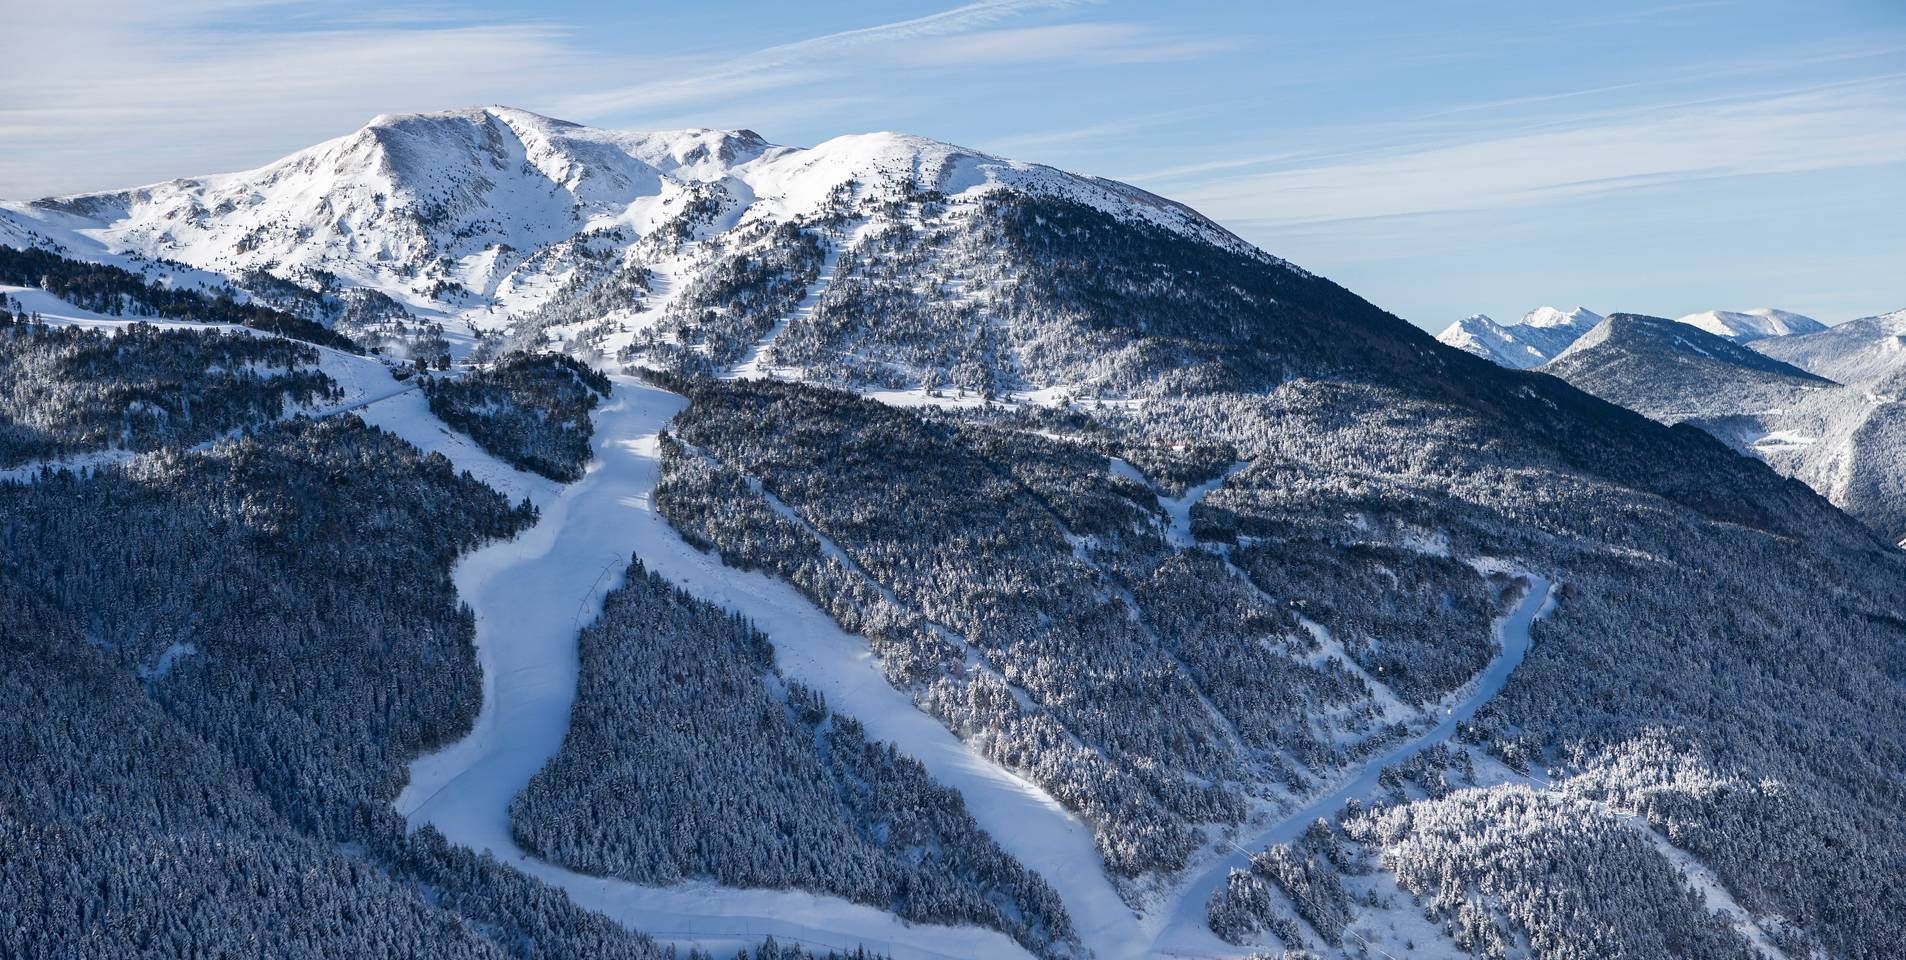 Caos y desconcierto en los Pirineos. A pocos días de la apertura de mayor centro de ski del sur, Andorra declara estado de emergencia y cierra sus fronteras hasta el 5 de Enero.